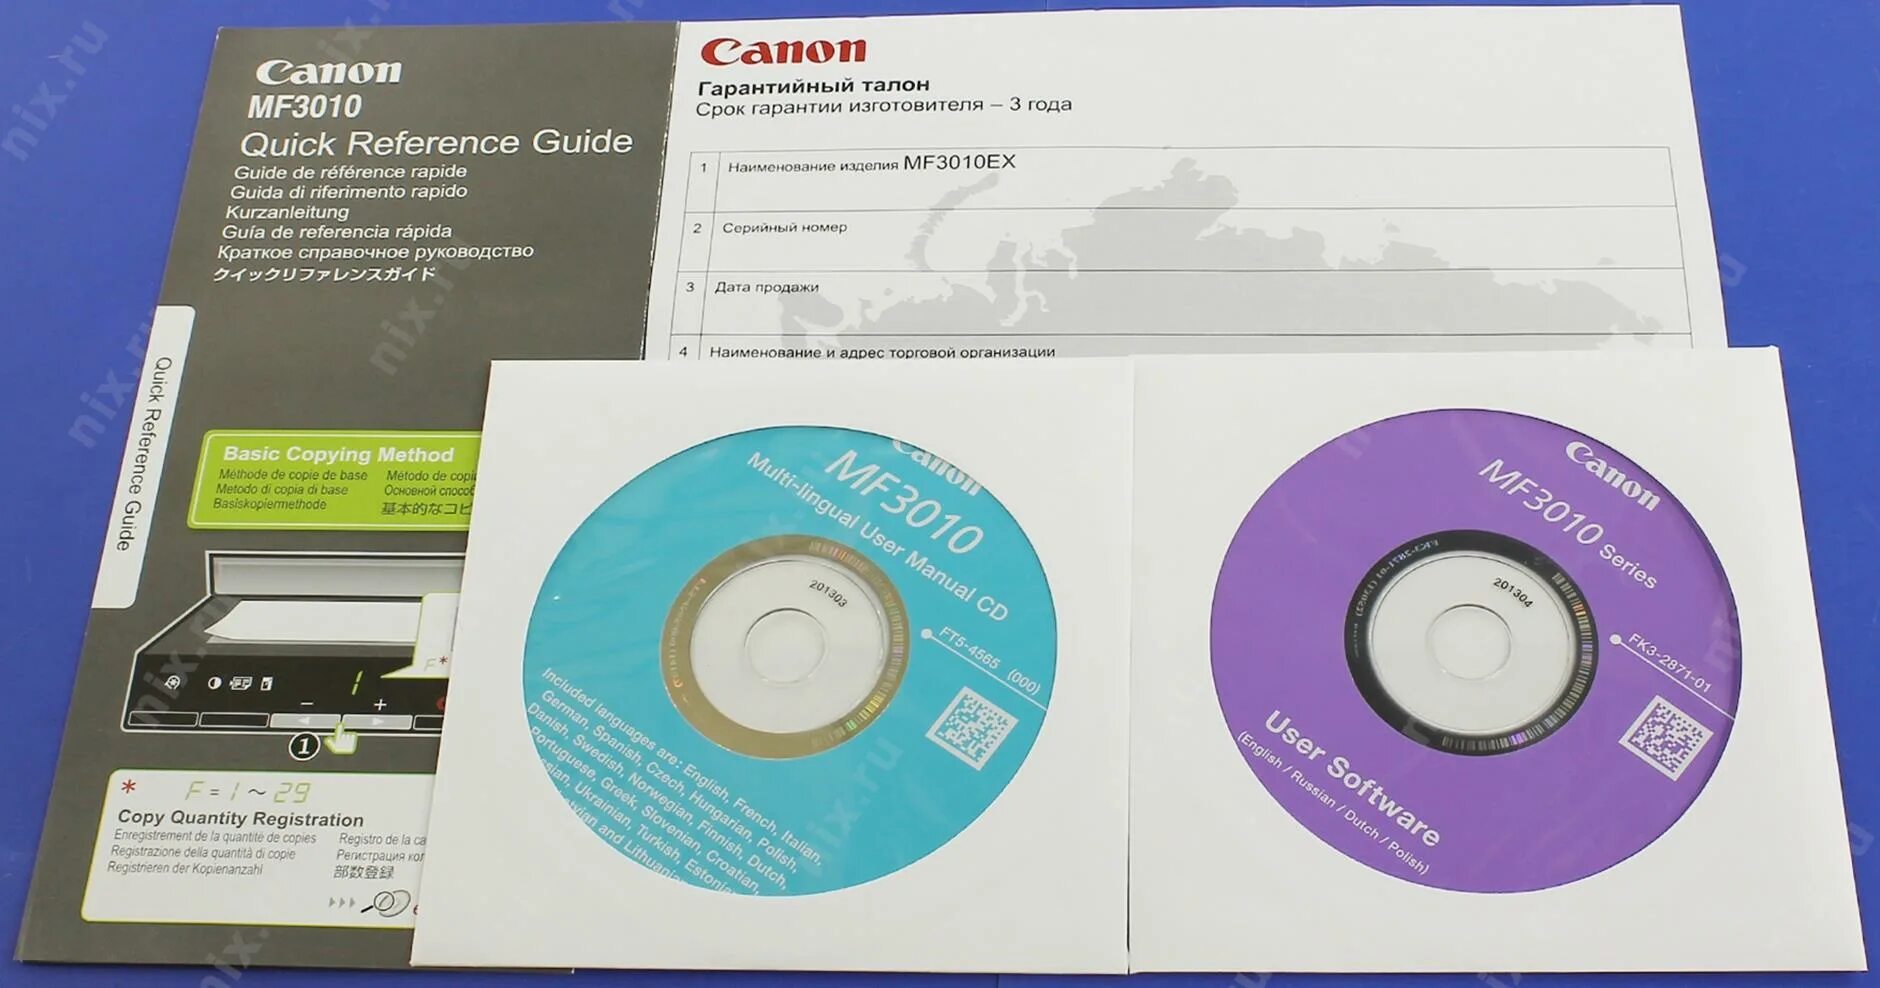 Изготовитель драйверов. Загрузочный диск для принтера Canon mf3010. Загрузочный диск для принтера Canon mf3110. Canon i-SENSYS mf3010. Установочный диск принтера Canon 1030.